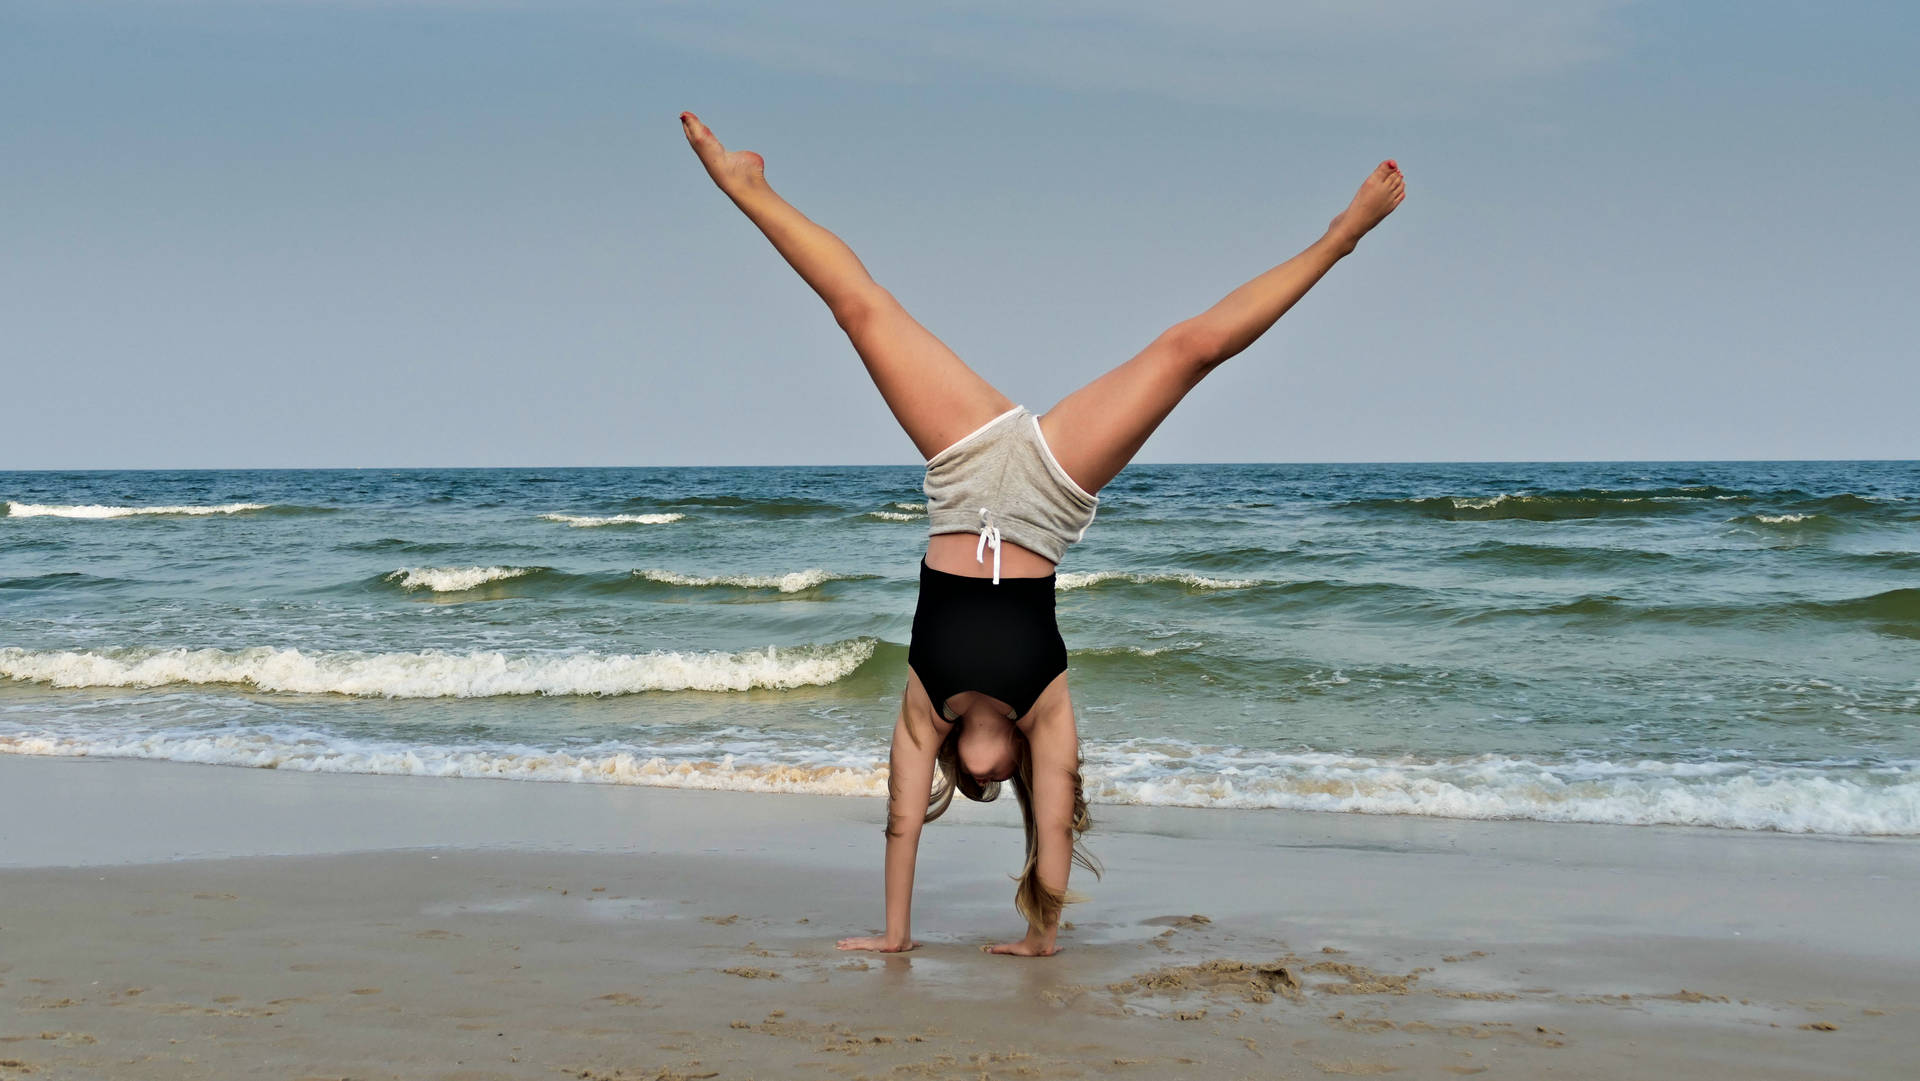 Gymnastics Handstand At Seashore Wallpaper